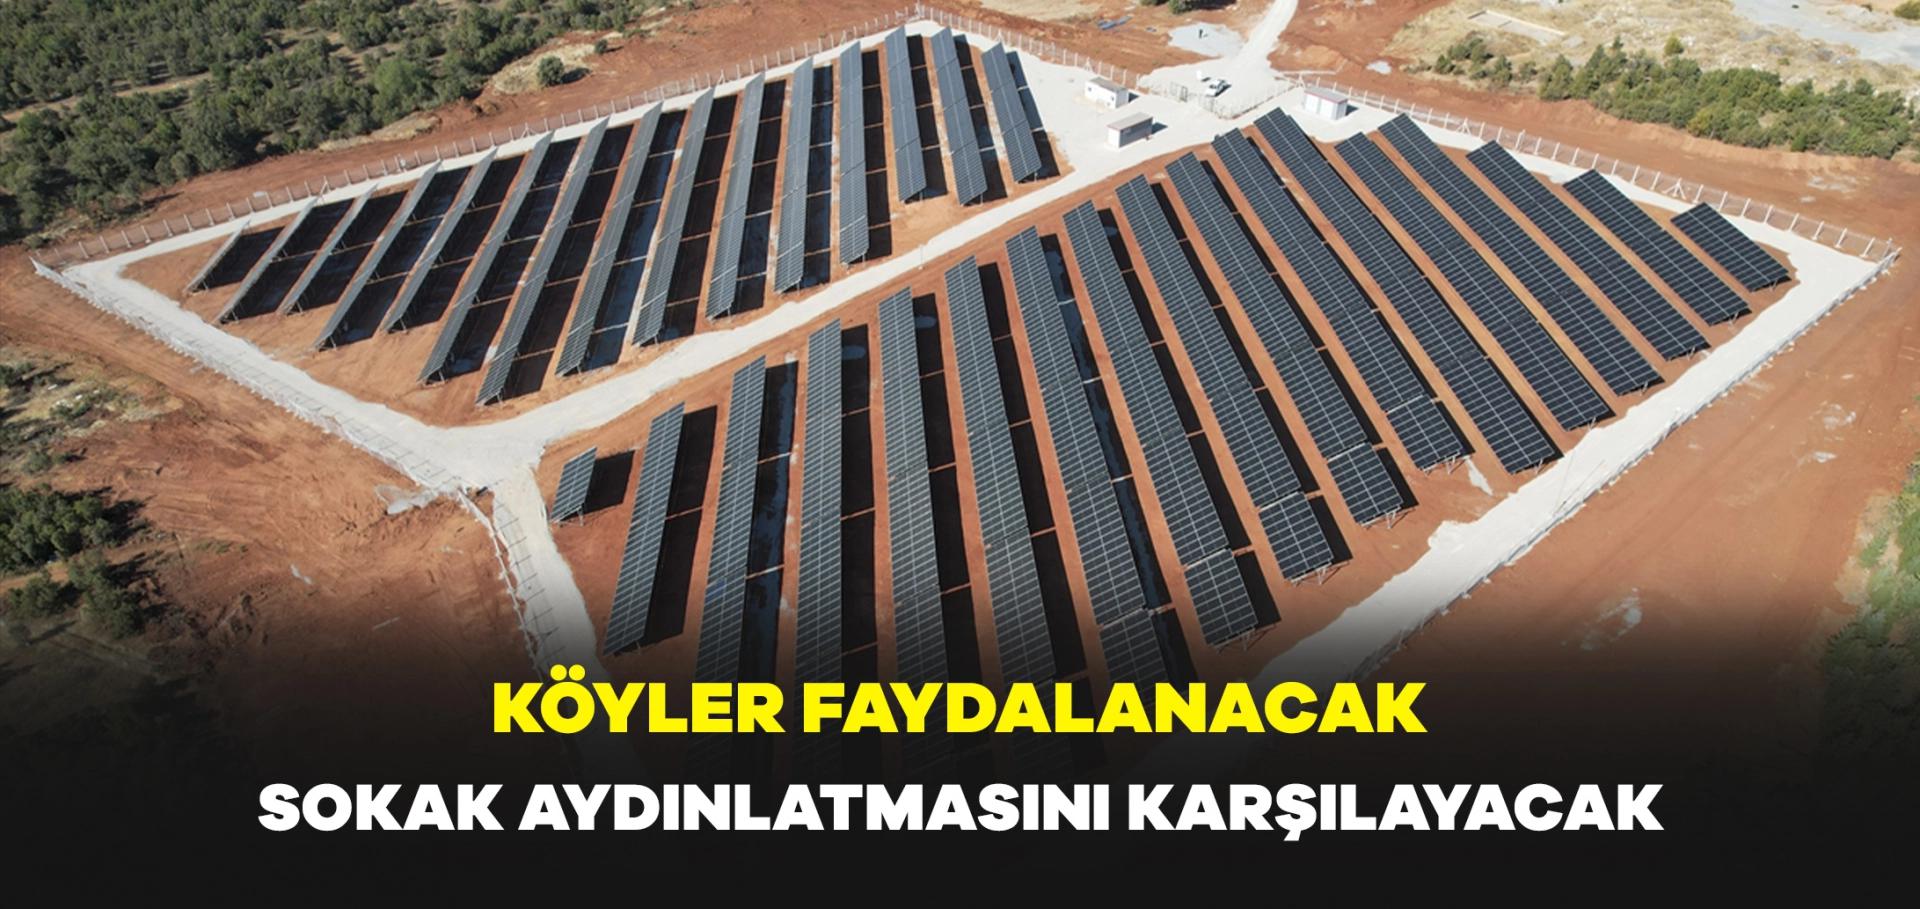 Uşak'ta kurulan güneş enerjisi santrali, köylerin sokak aydınlatmasını karşılayacak